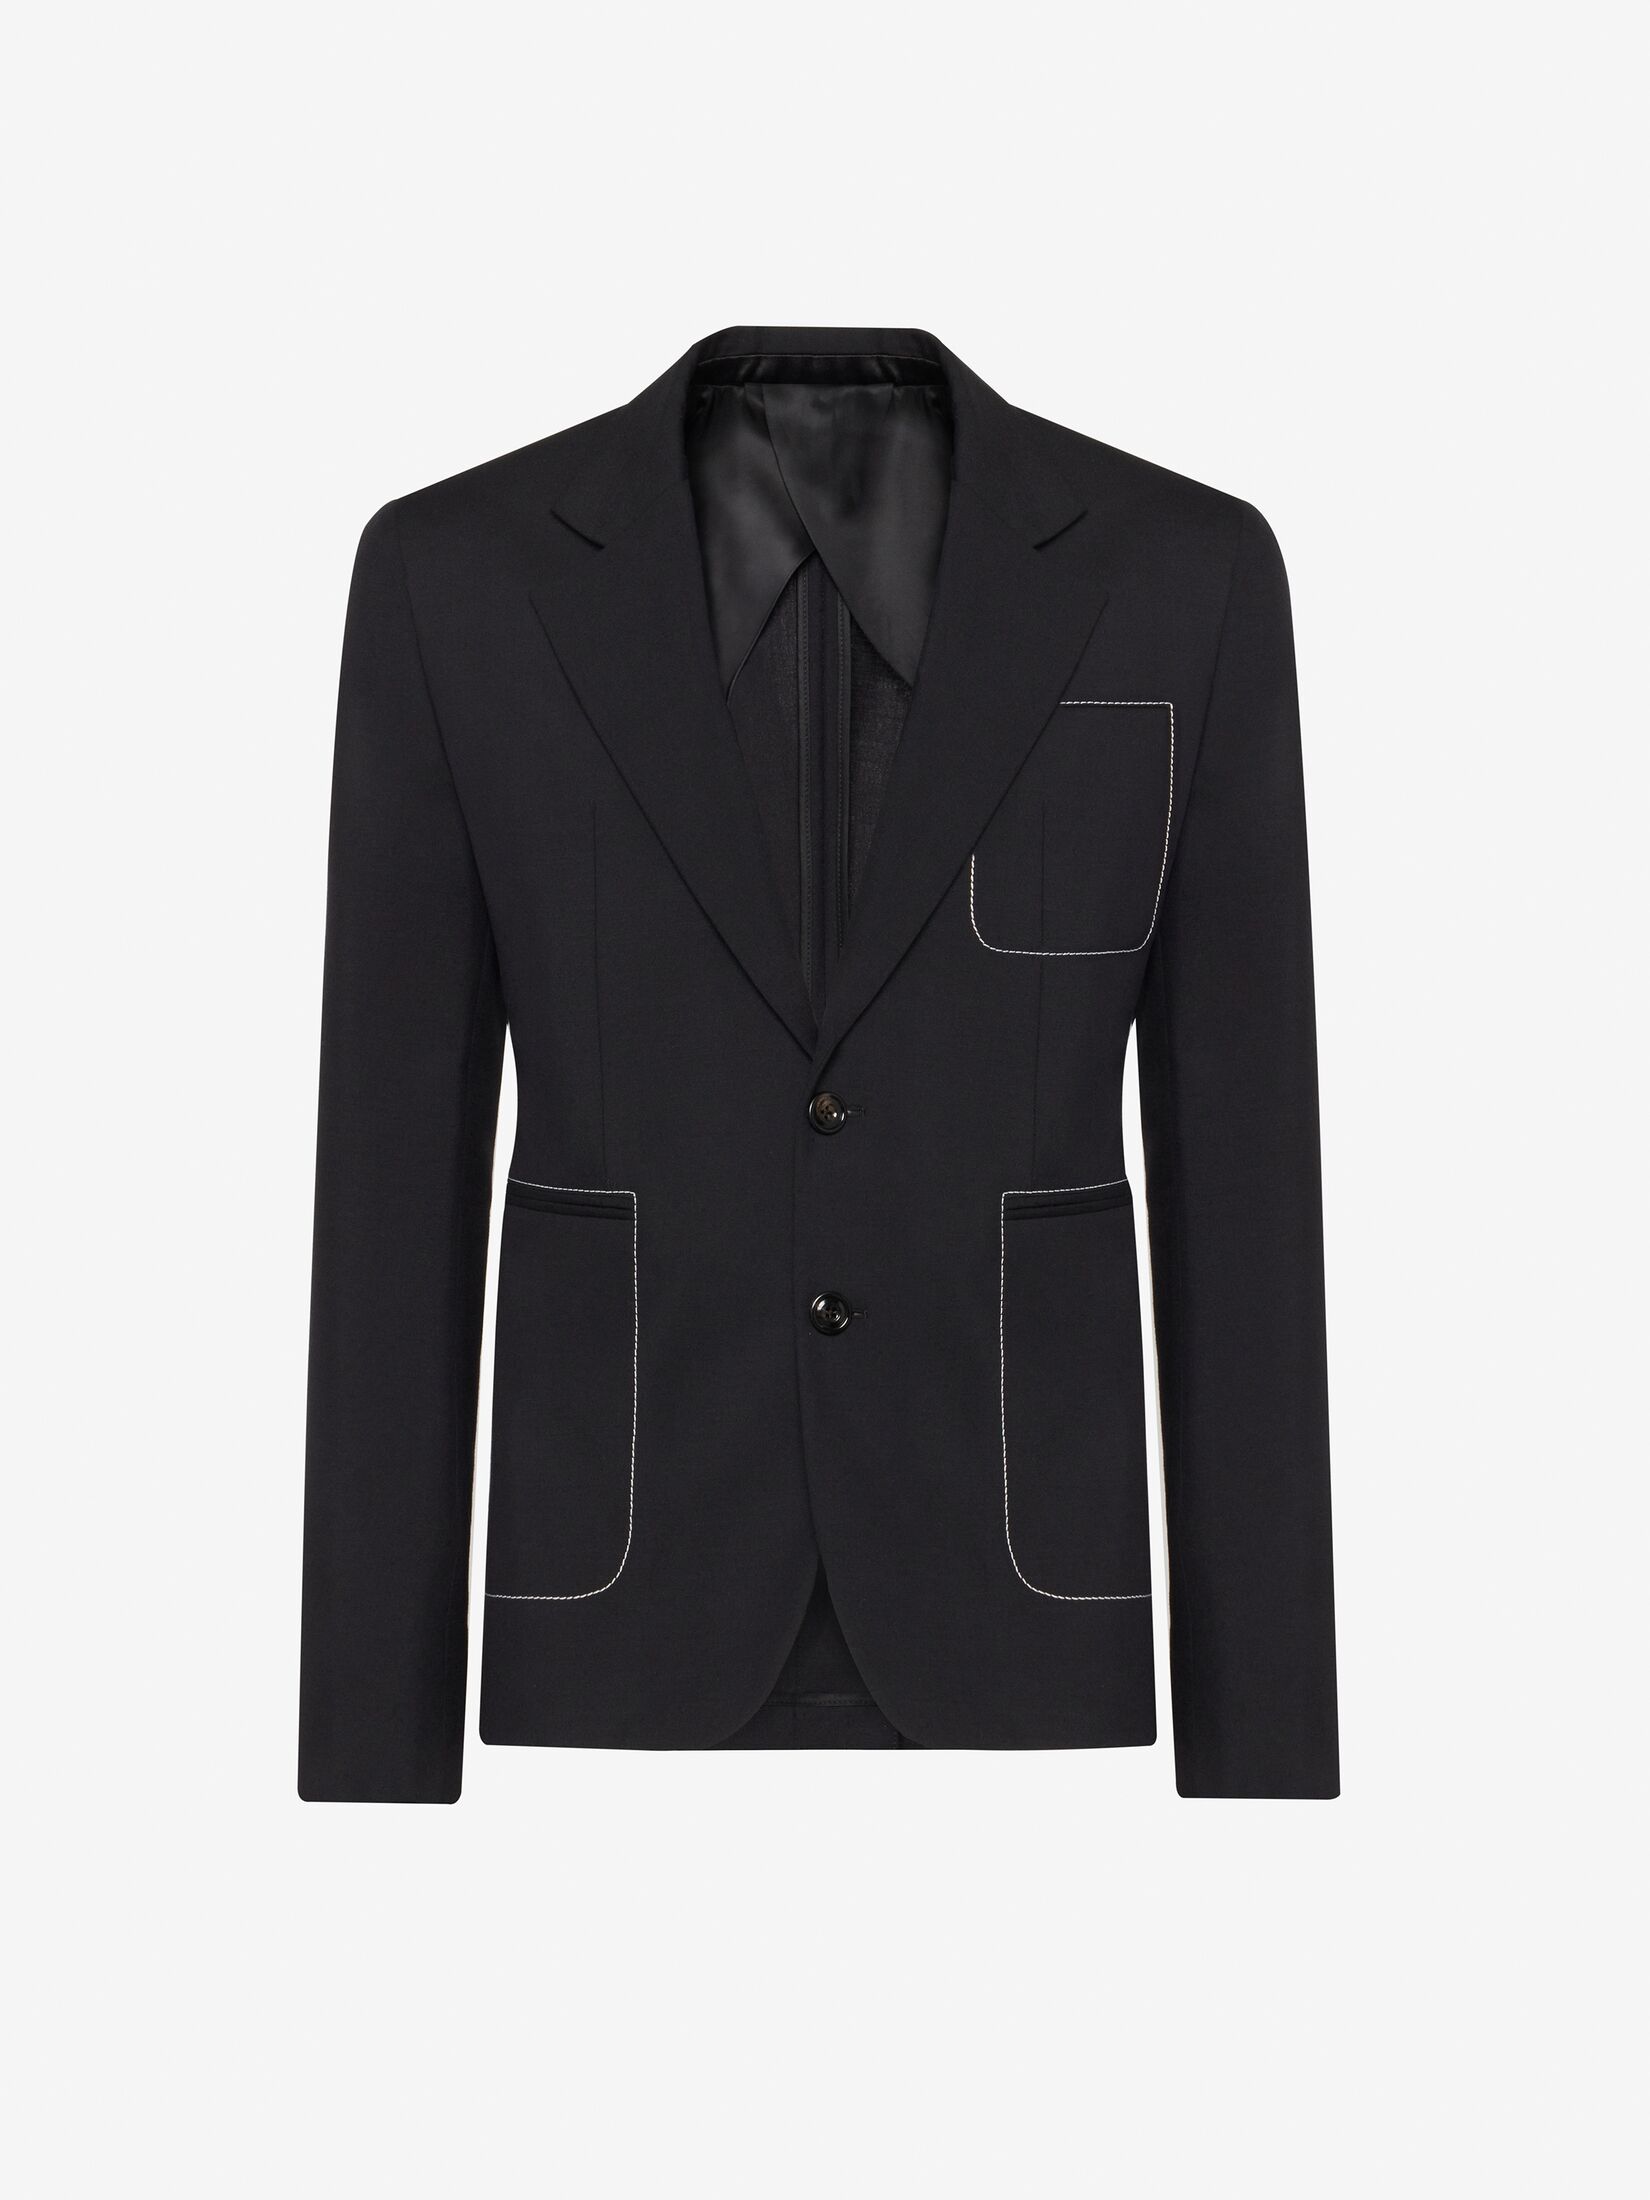 Men's Designer Jackets & Luxury Blazers | Alexander McQueen UK